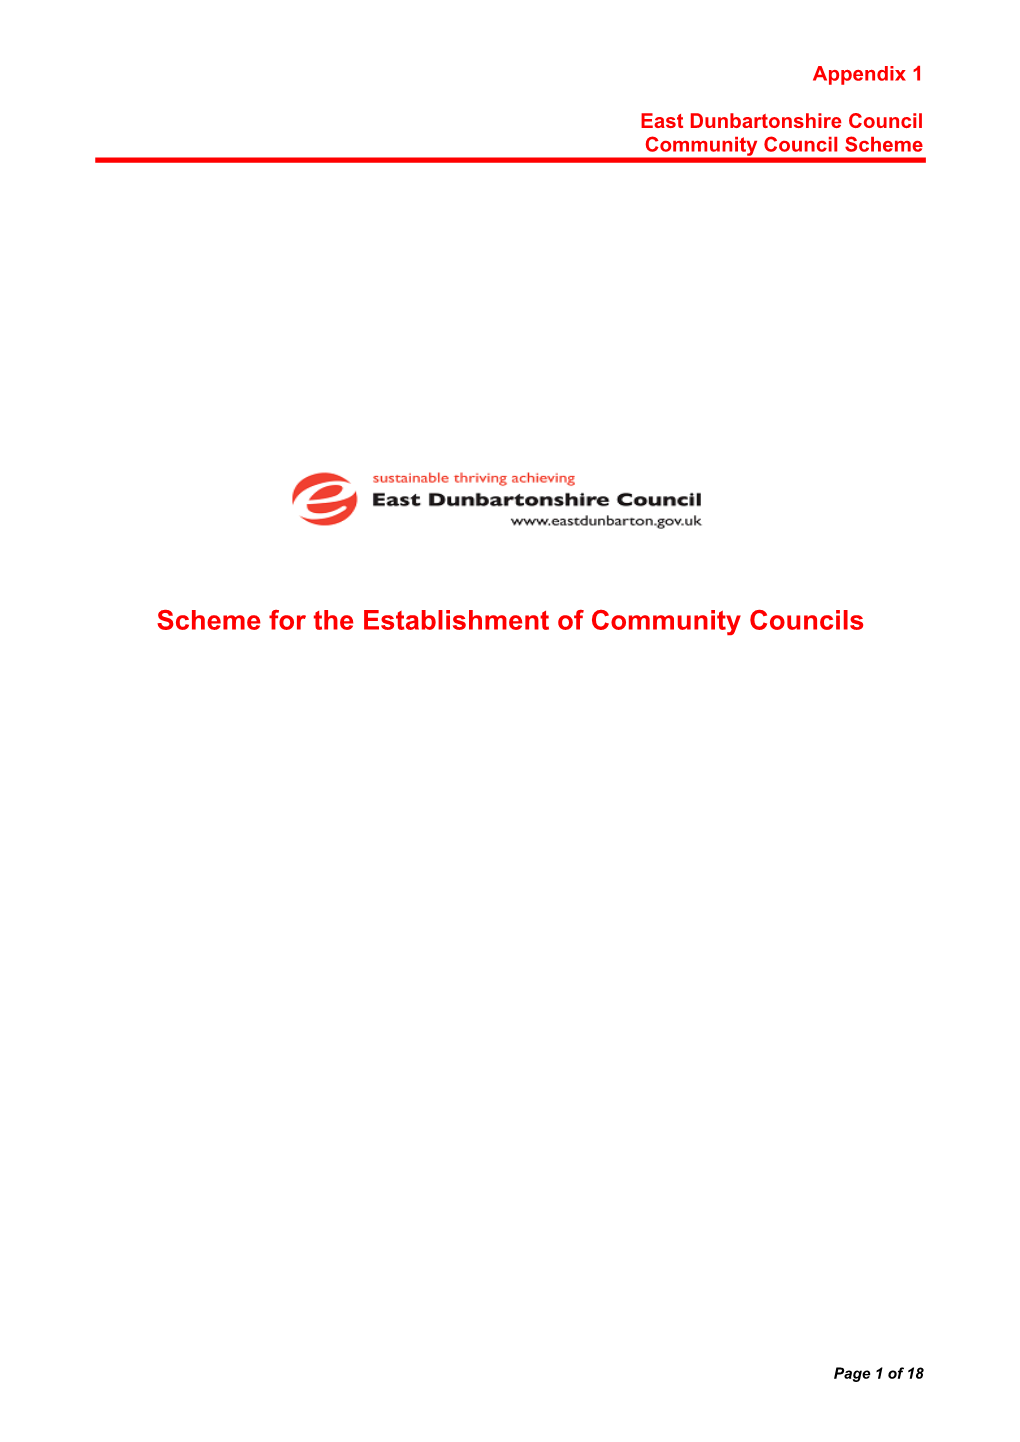 East Dunbartonshire Council PDF 157 KB